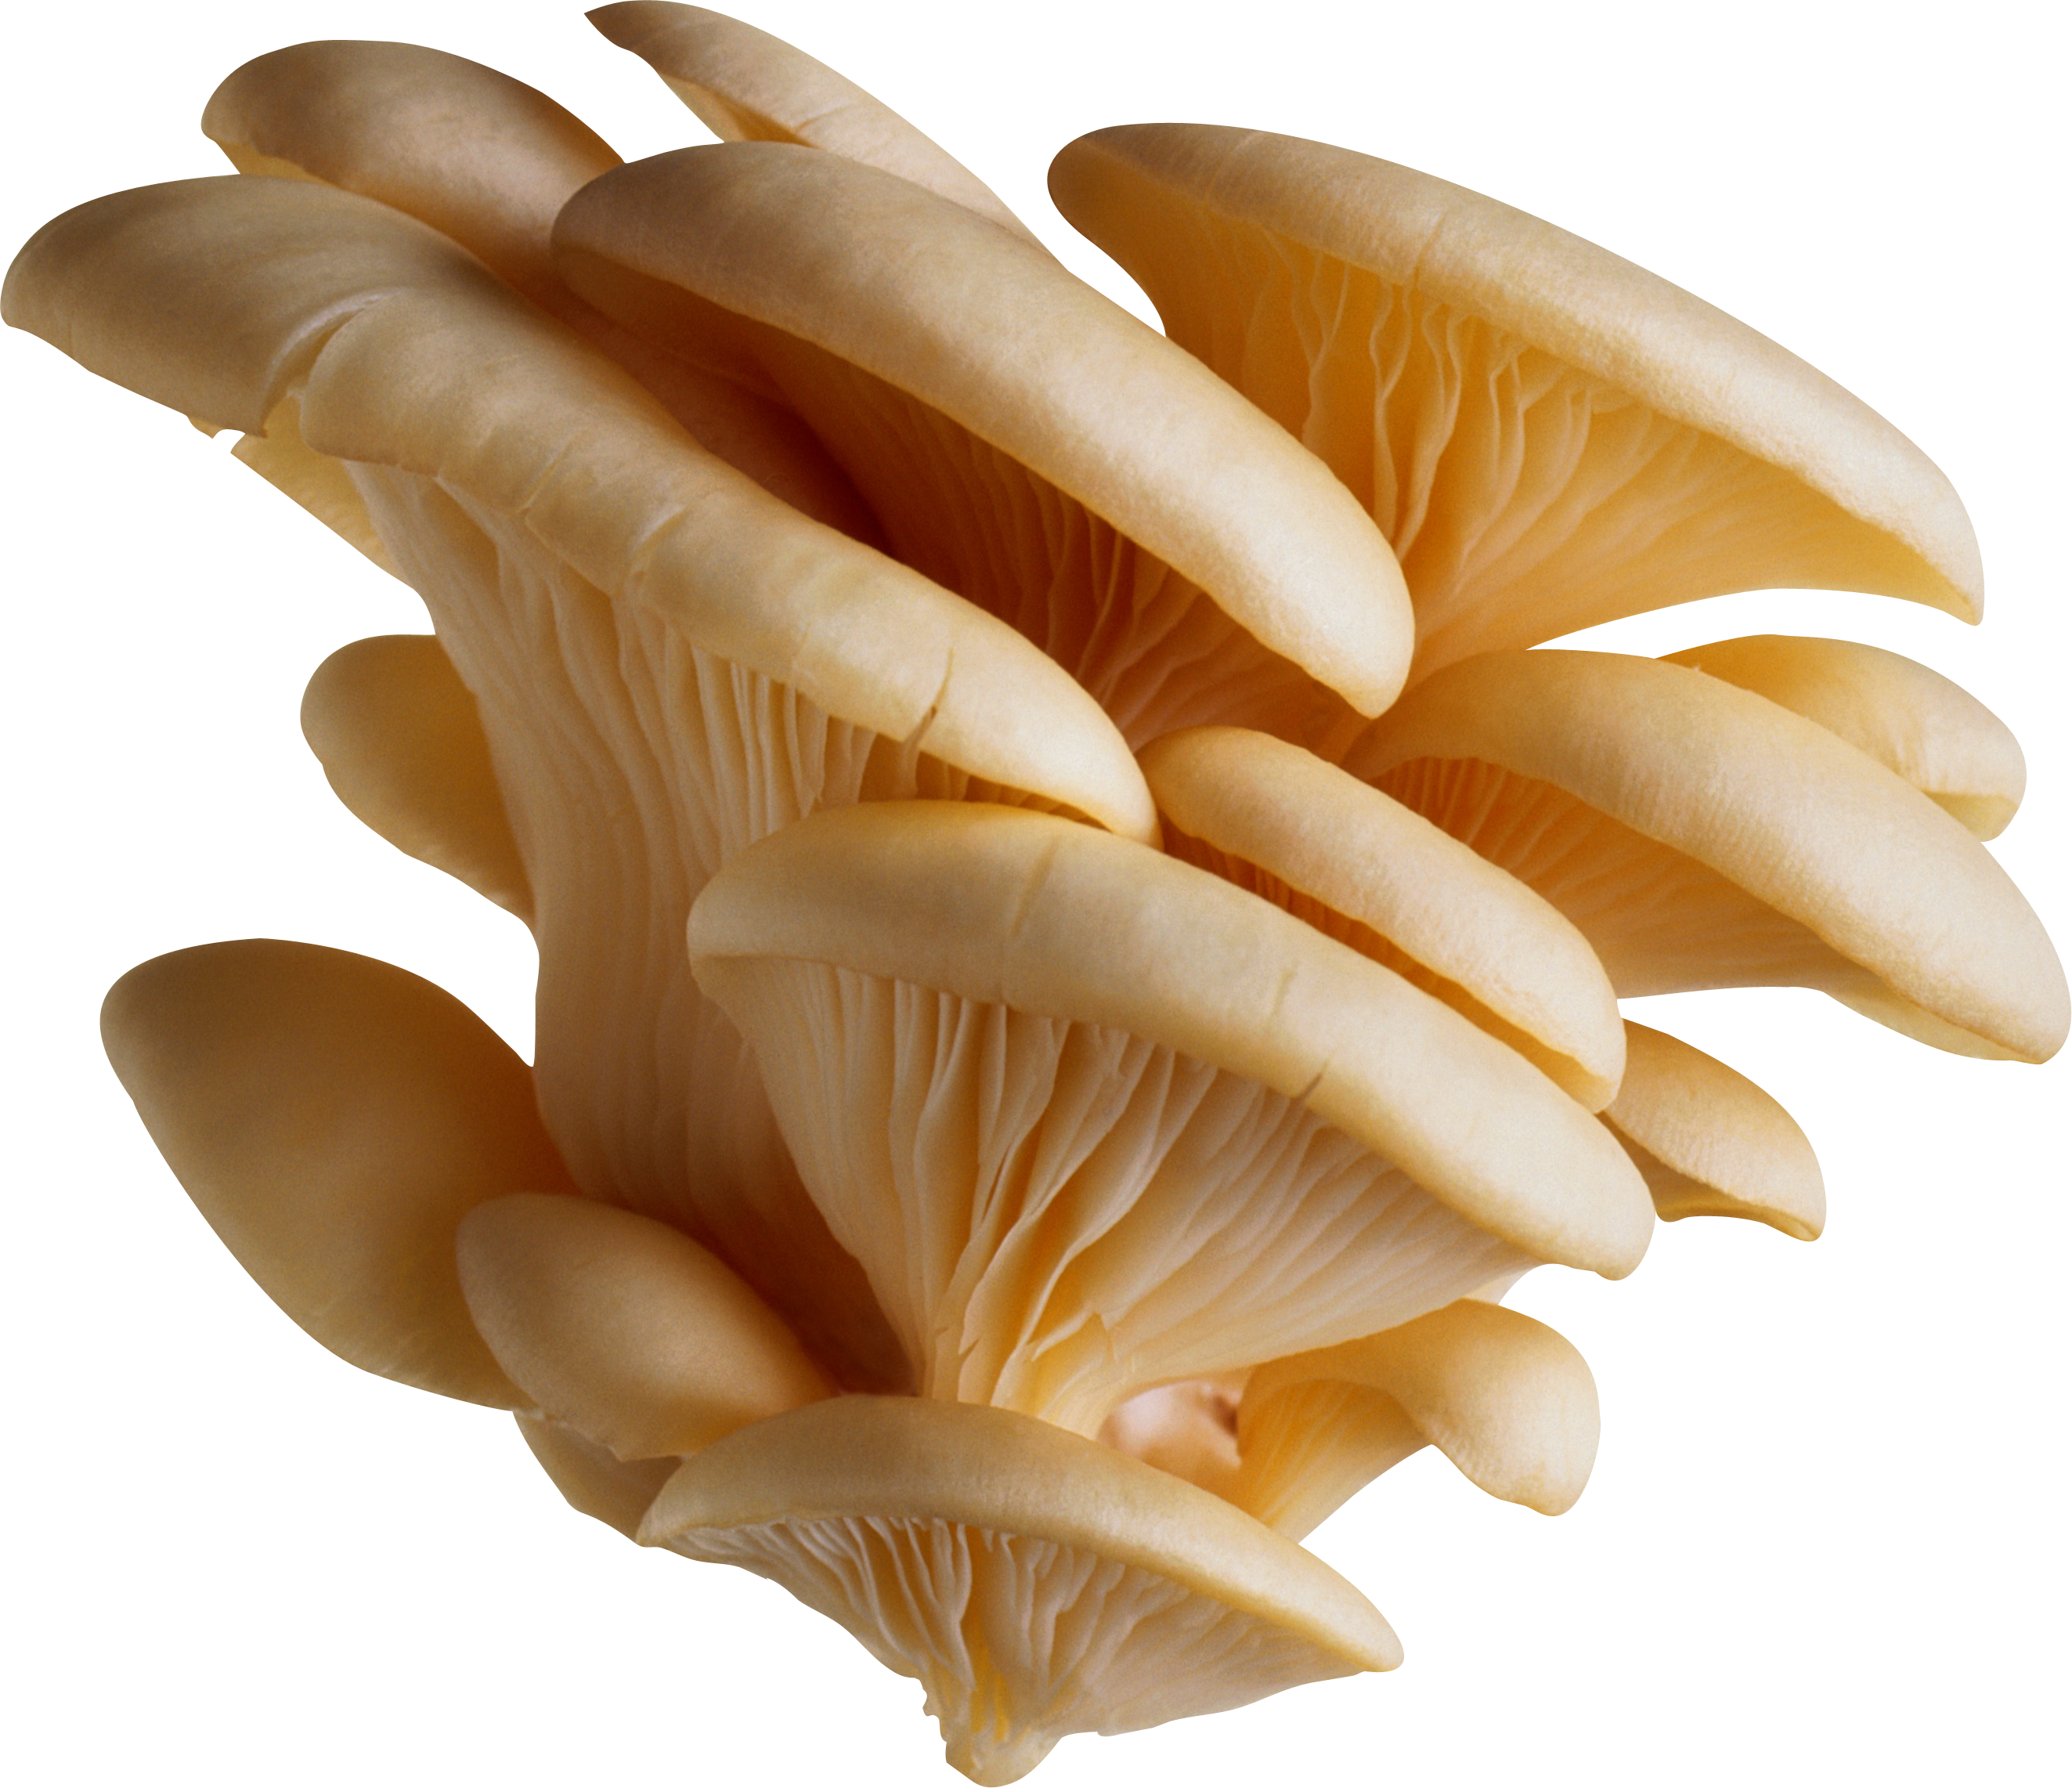 White mushrooms PNG image